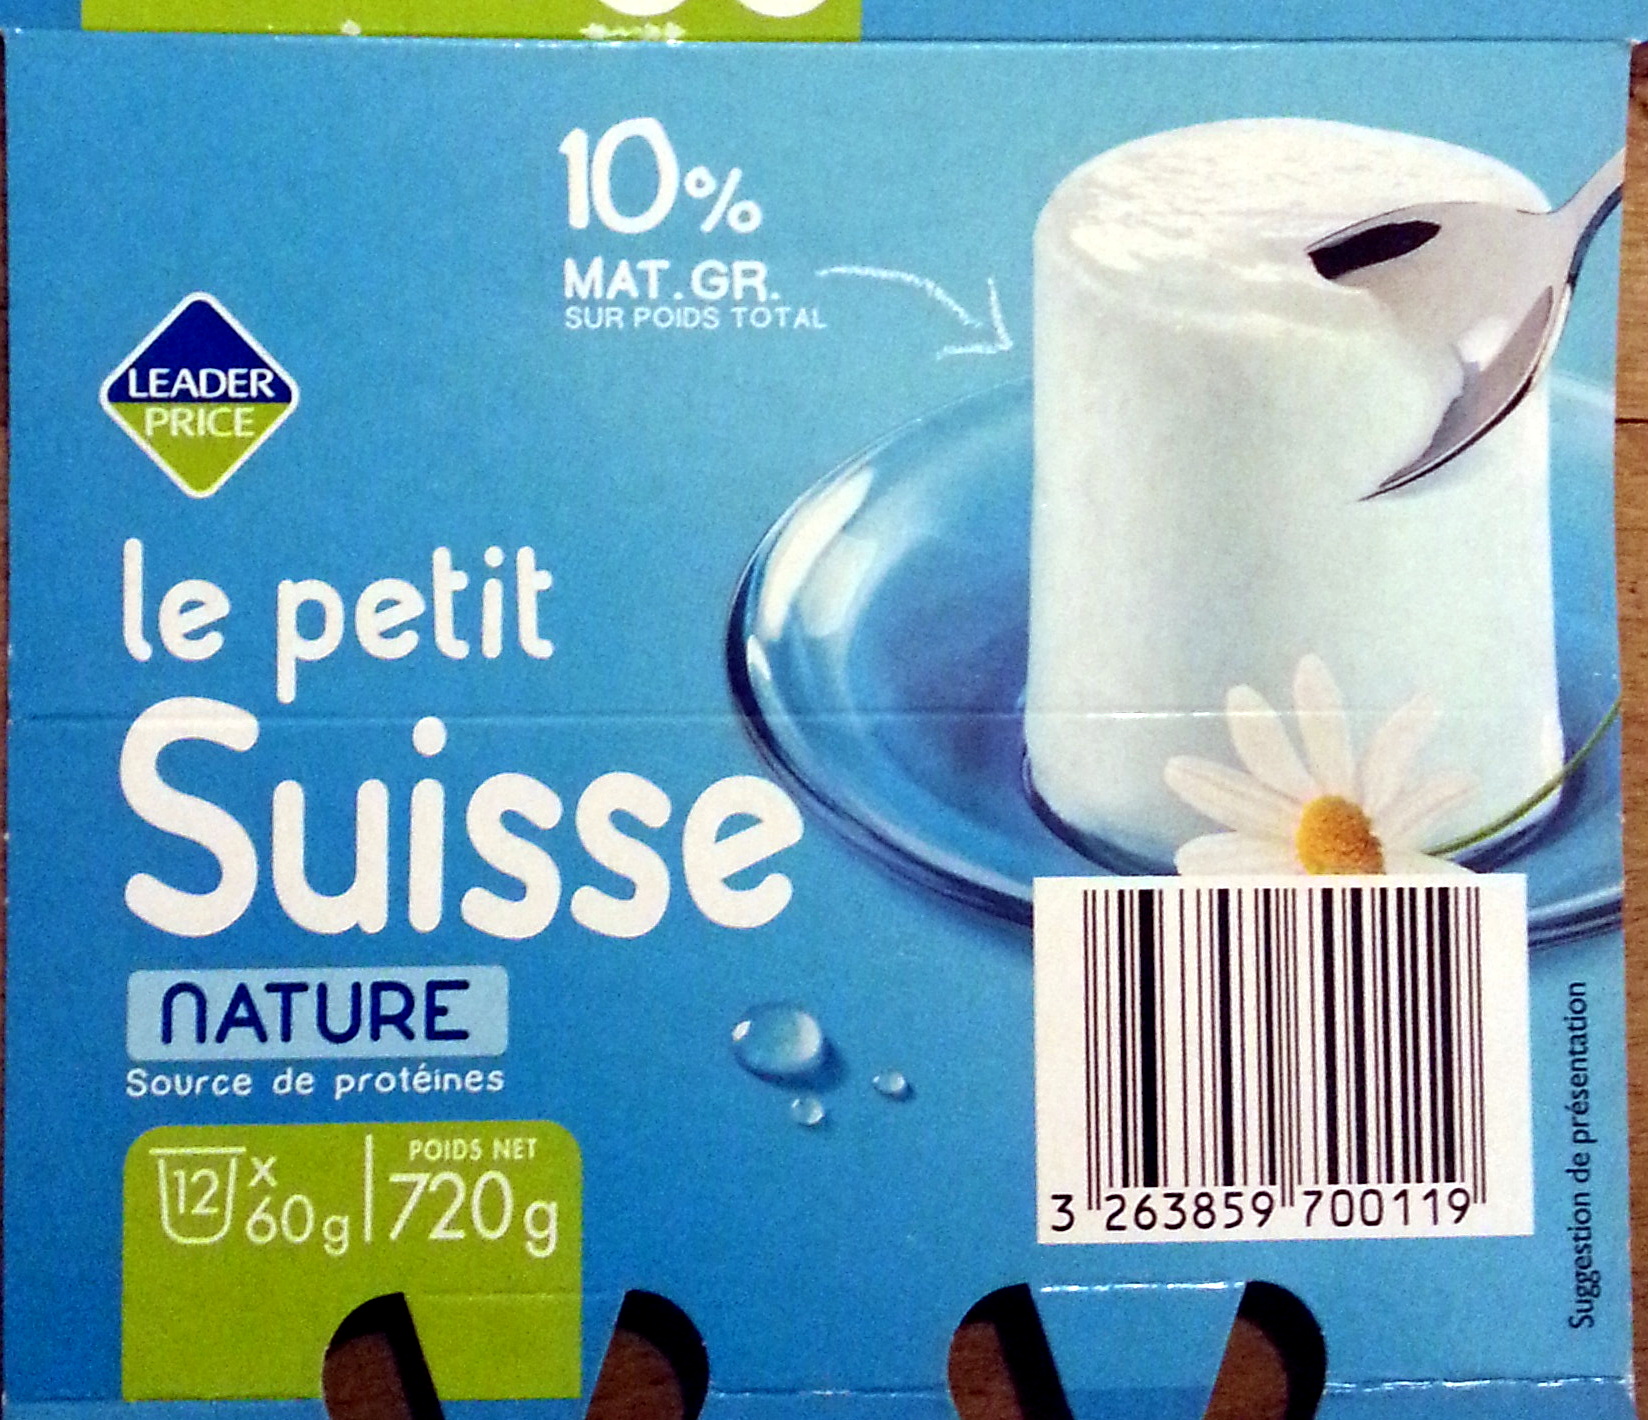 Le petit Suisse, nature (10 % MG) - Produkt - fr